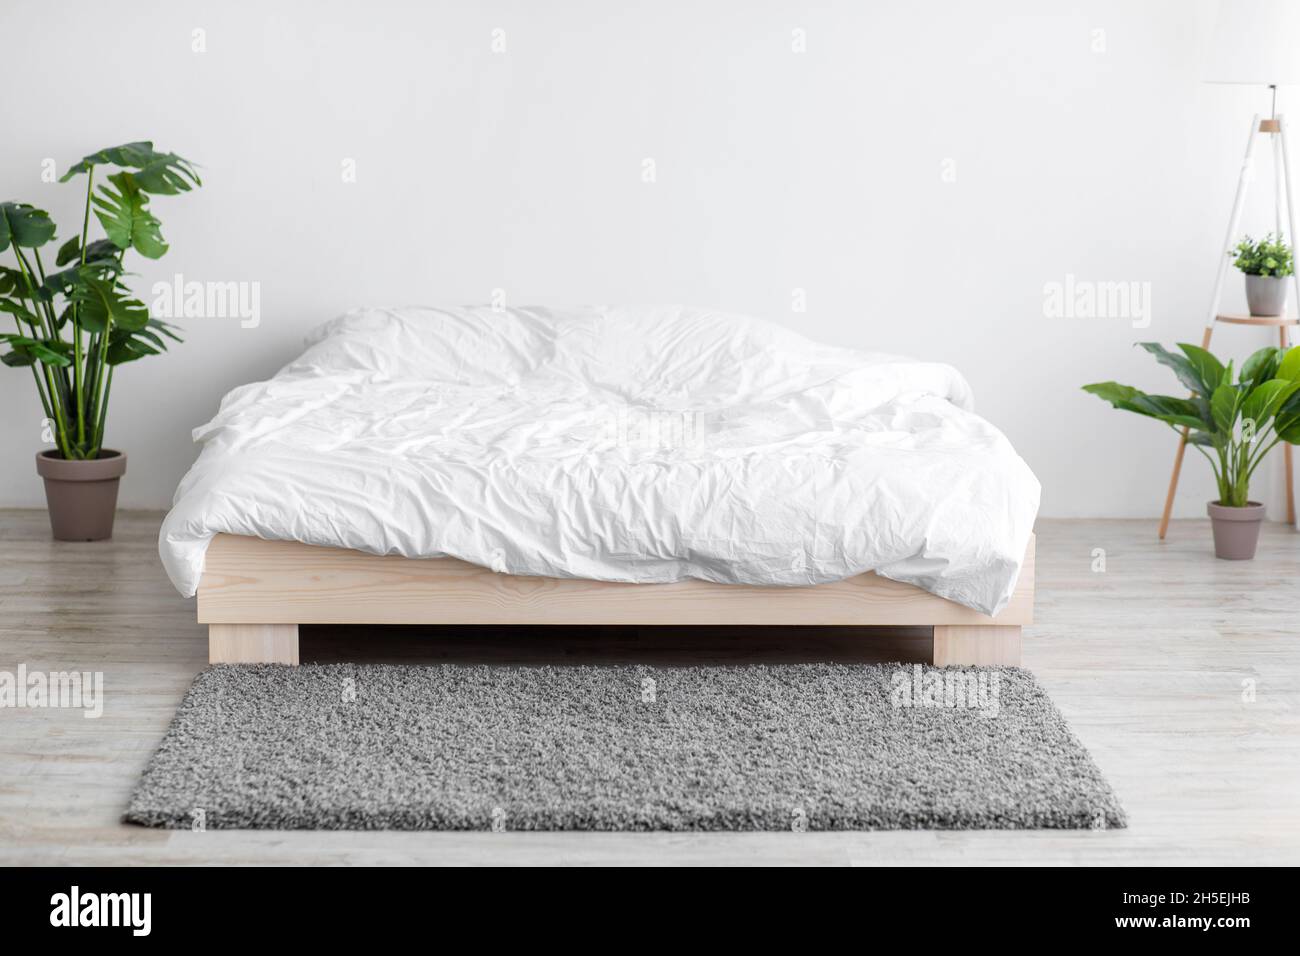 Komfortables Doppelbett mit Bettwäsche, weichem grauem Teppich und Topfpflanzen auf dem Boden Stockfoto